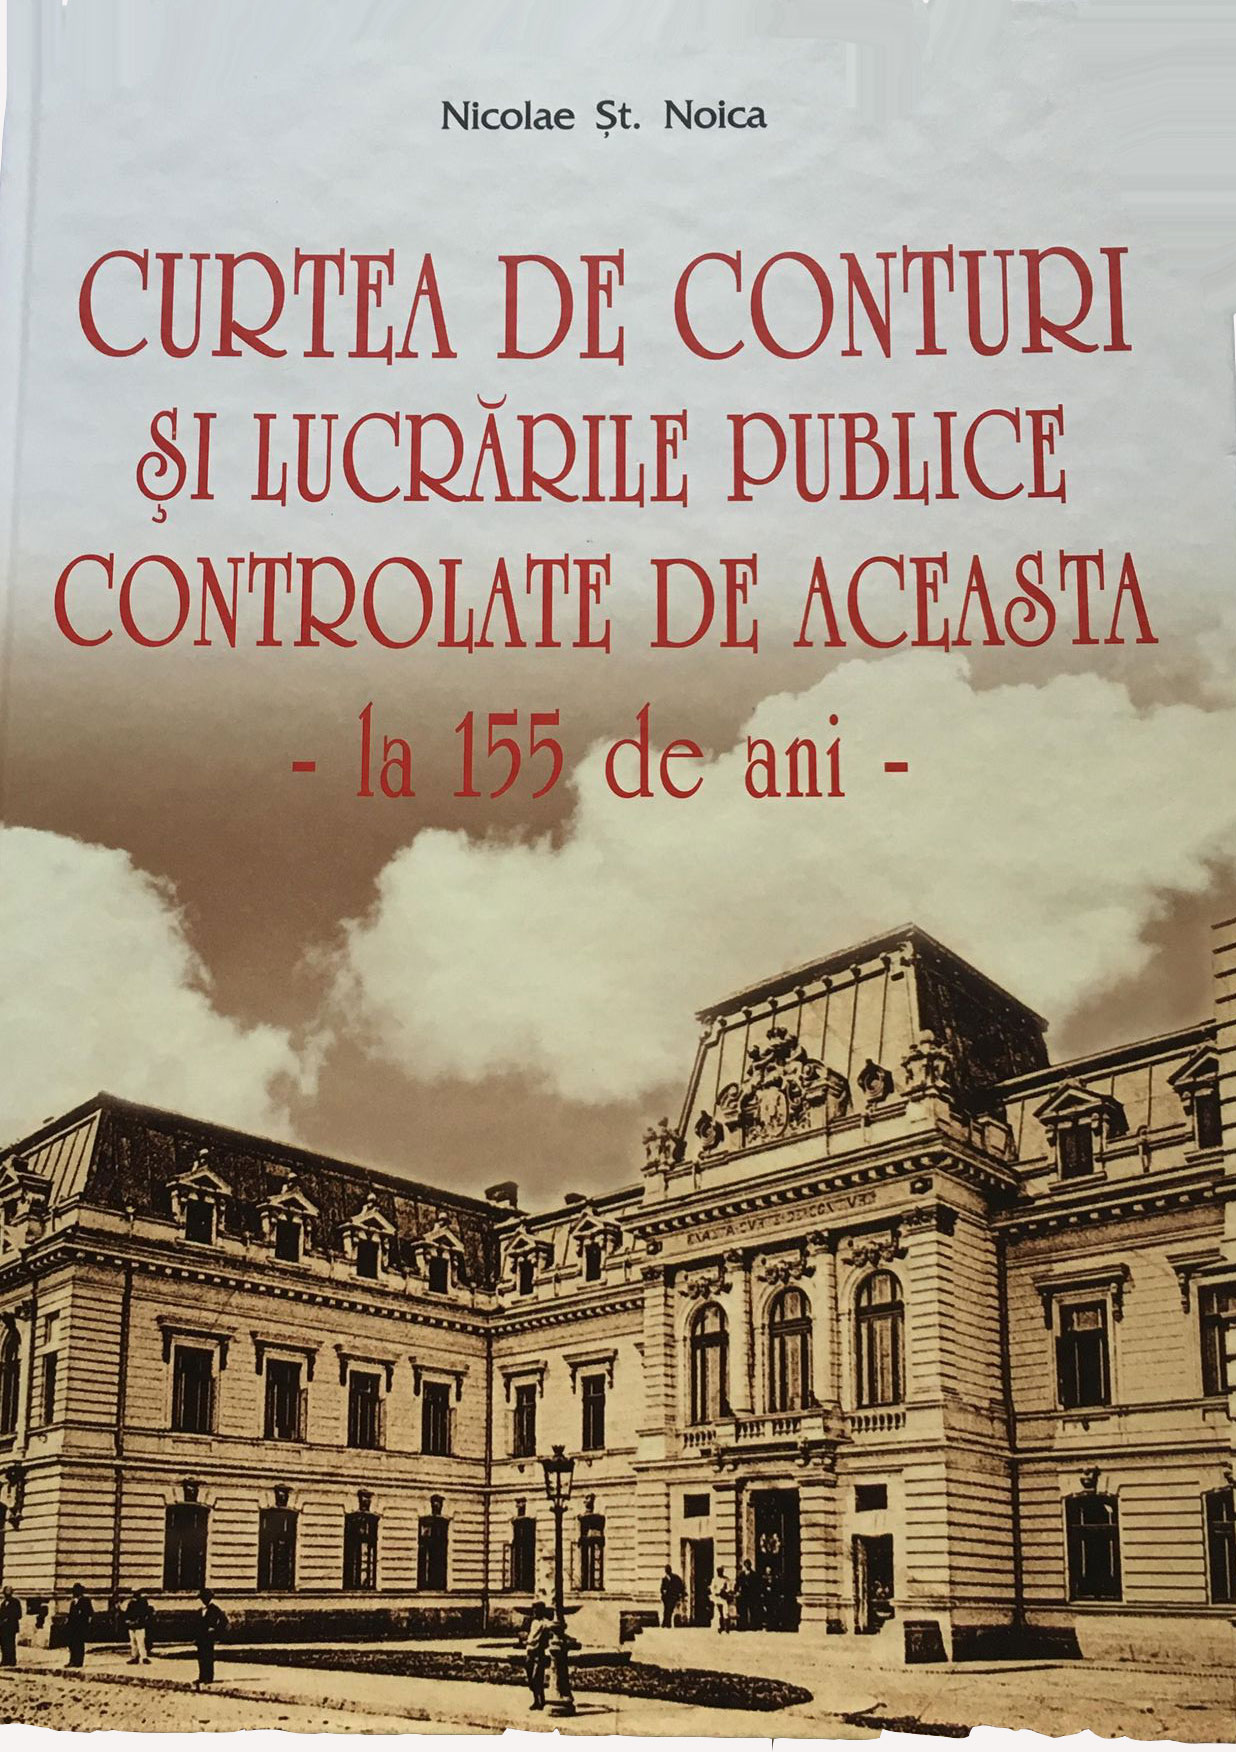 Curtea de Conturi si lucrarile publice controlate de aceasta | Nicolae St. Noica